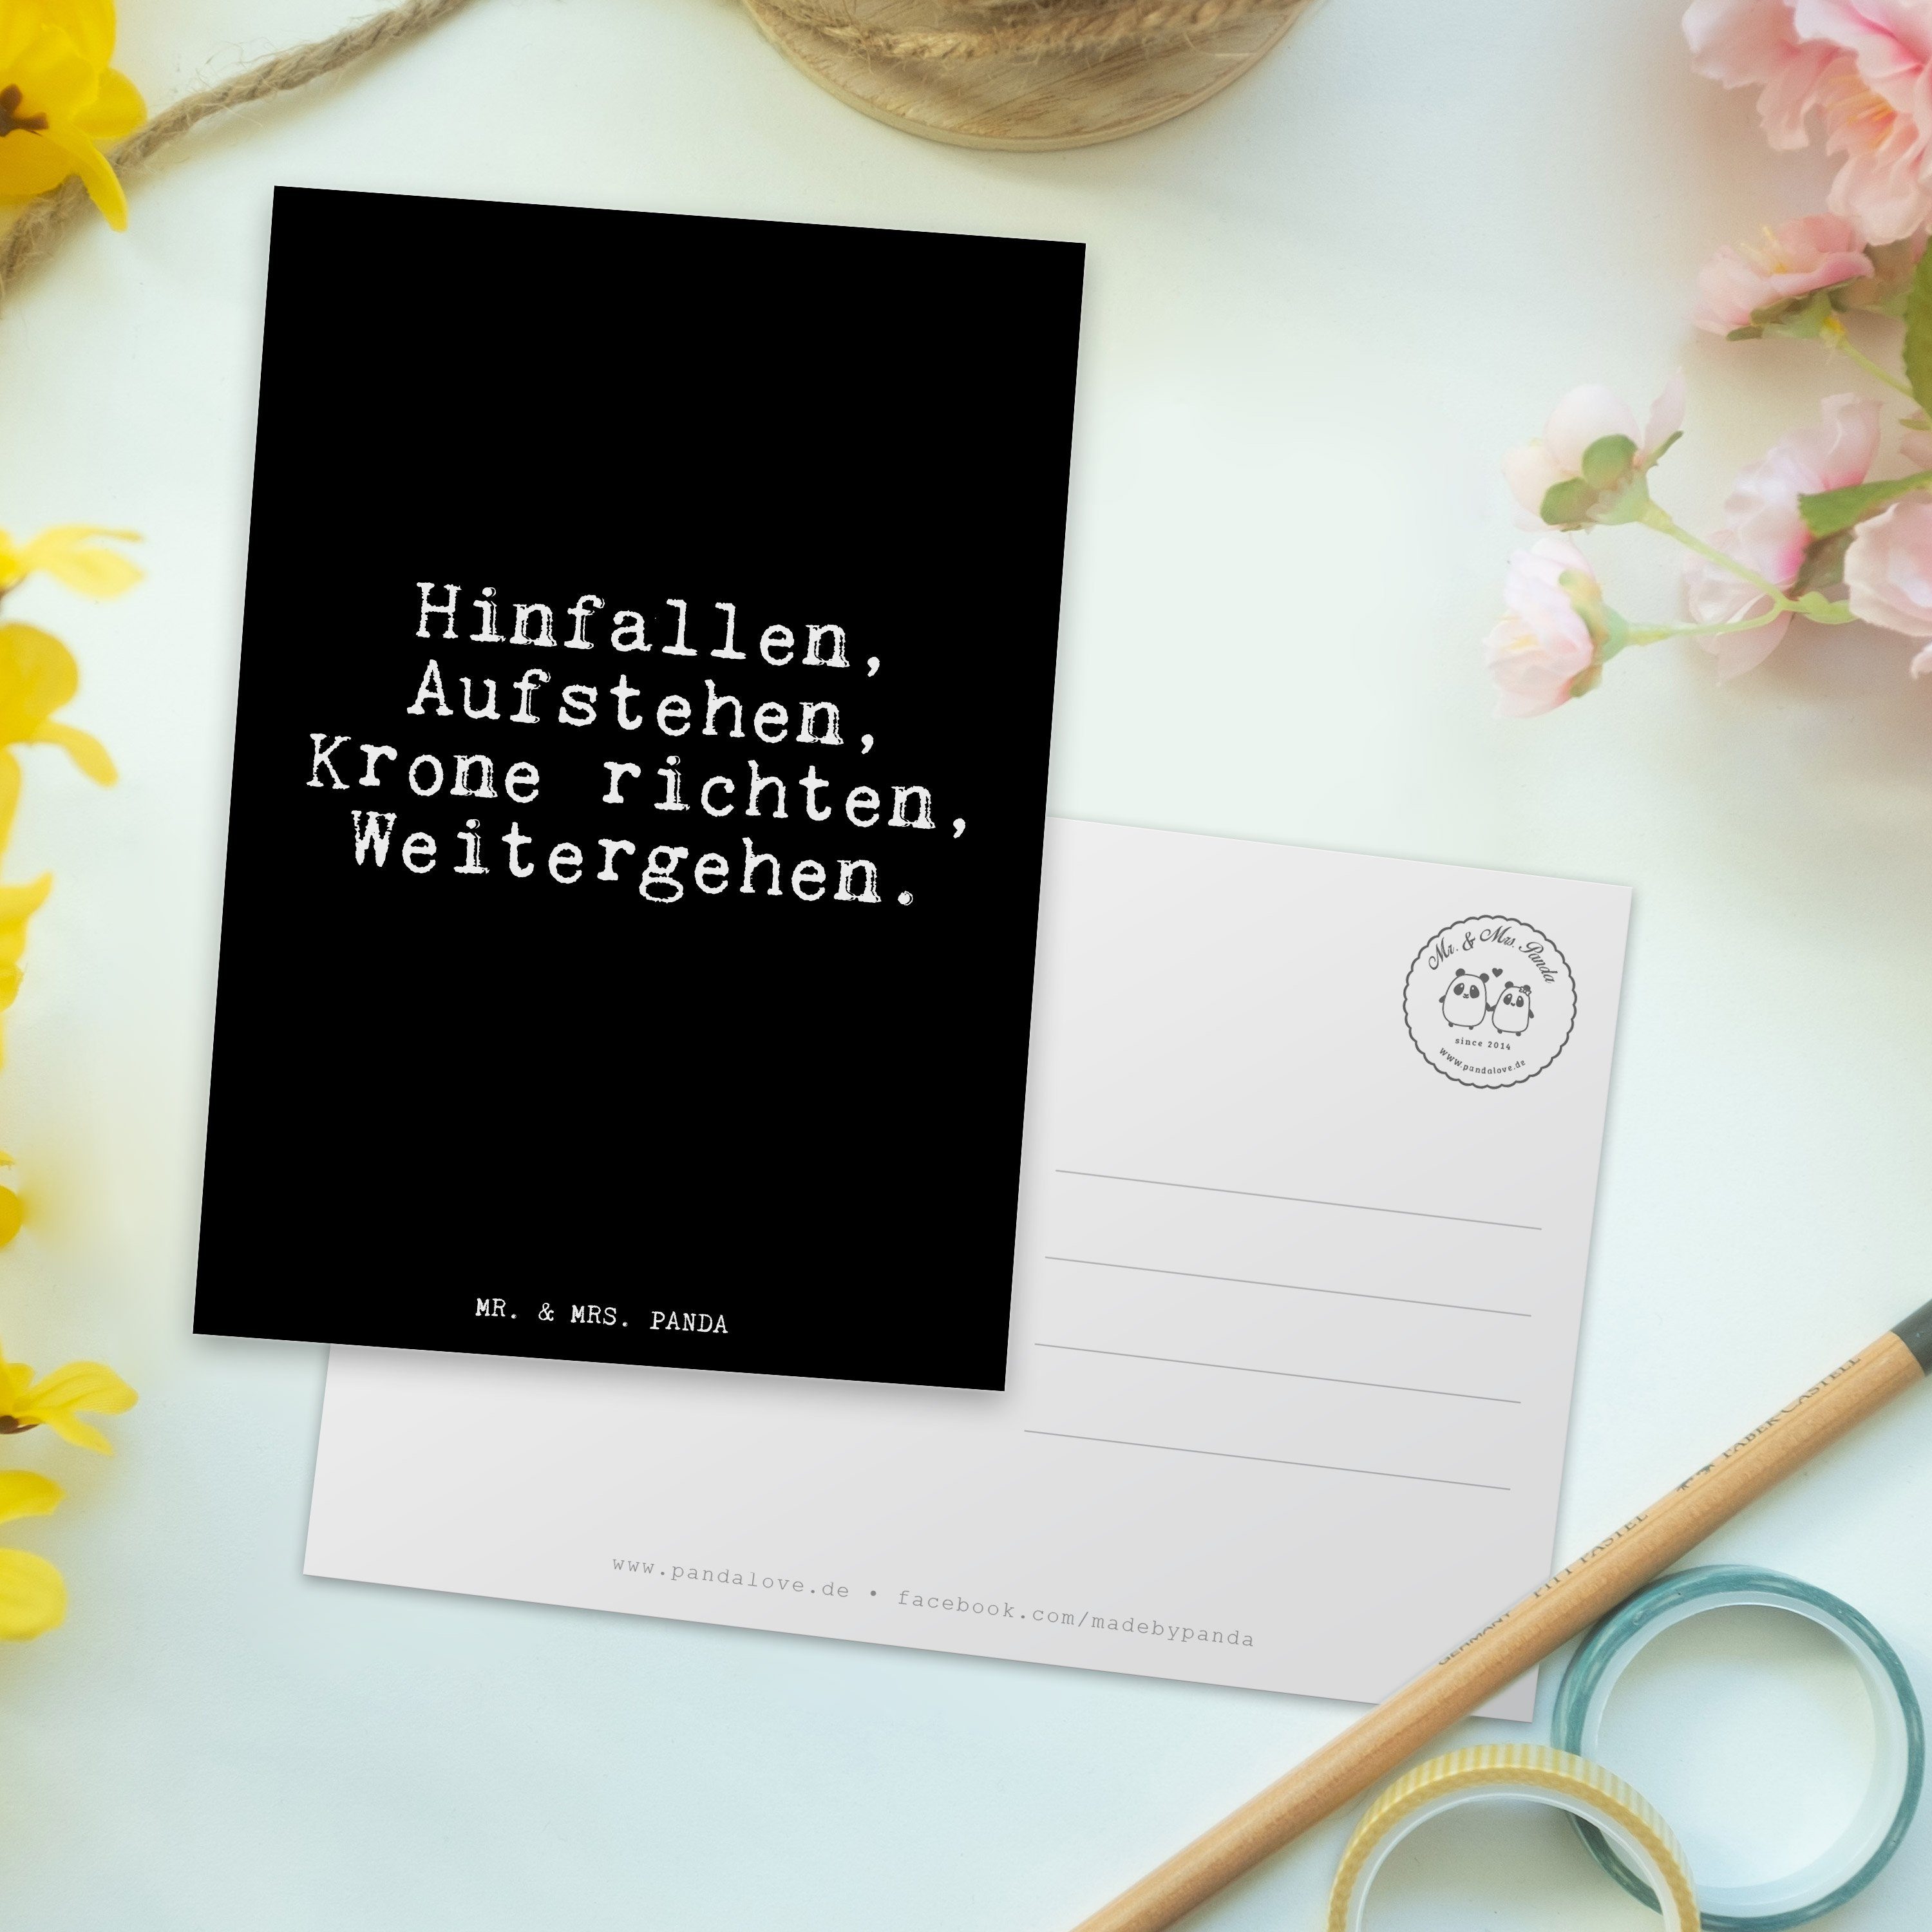 Geschenk, Hinfallen, Postkarte Panda Aufstehen, Frauen - & richten,... Mr. Mrs. Krone Schwarz -